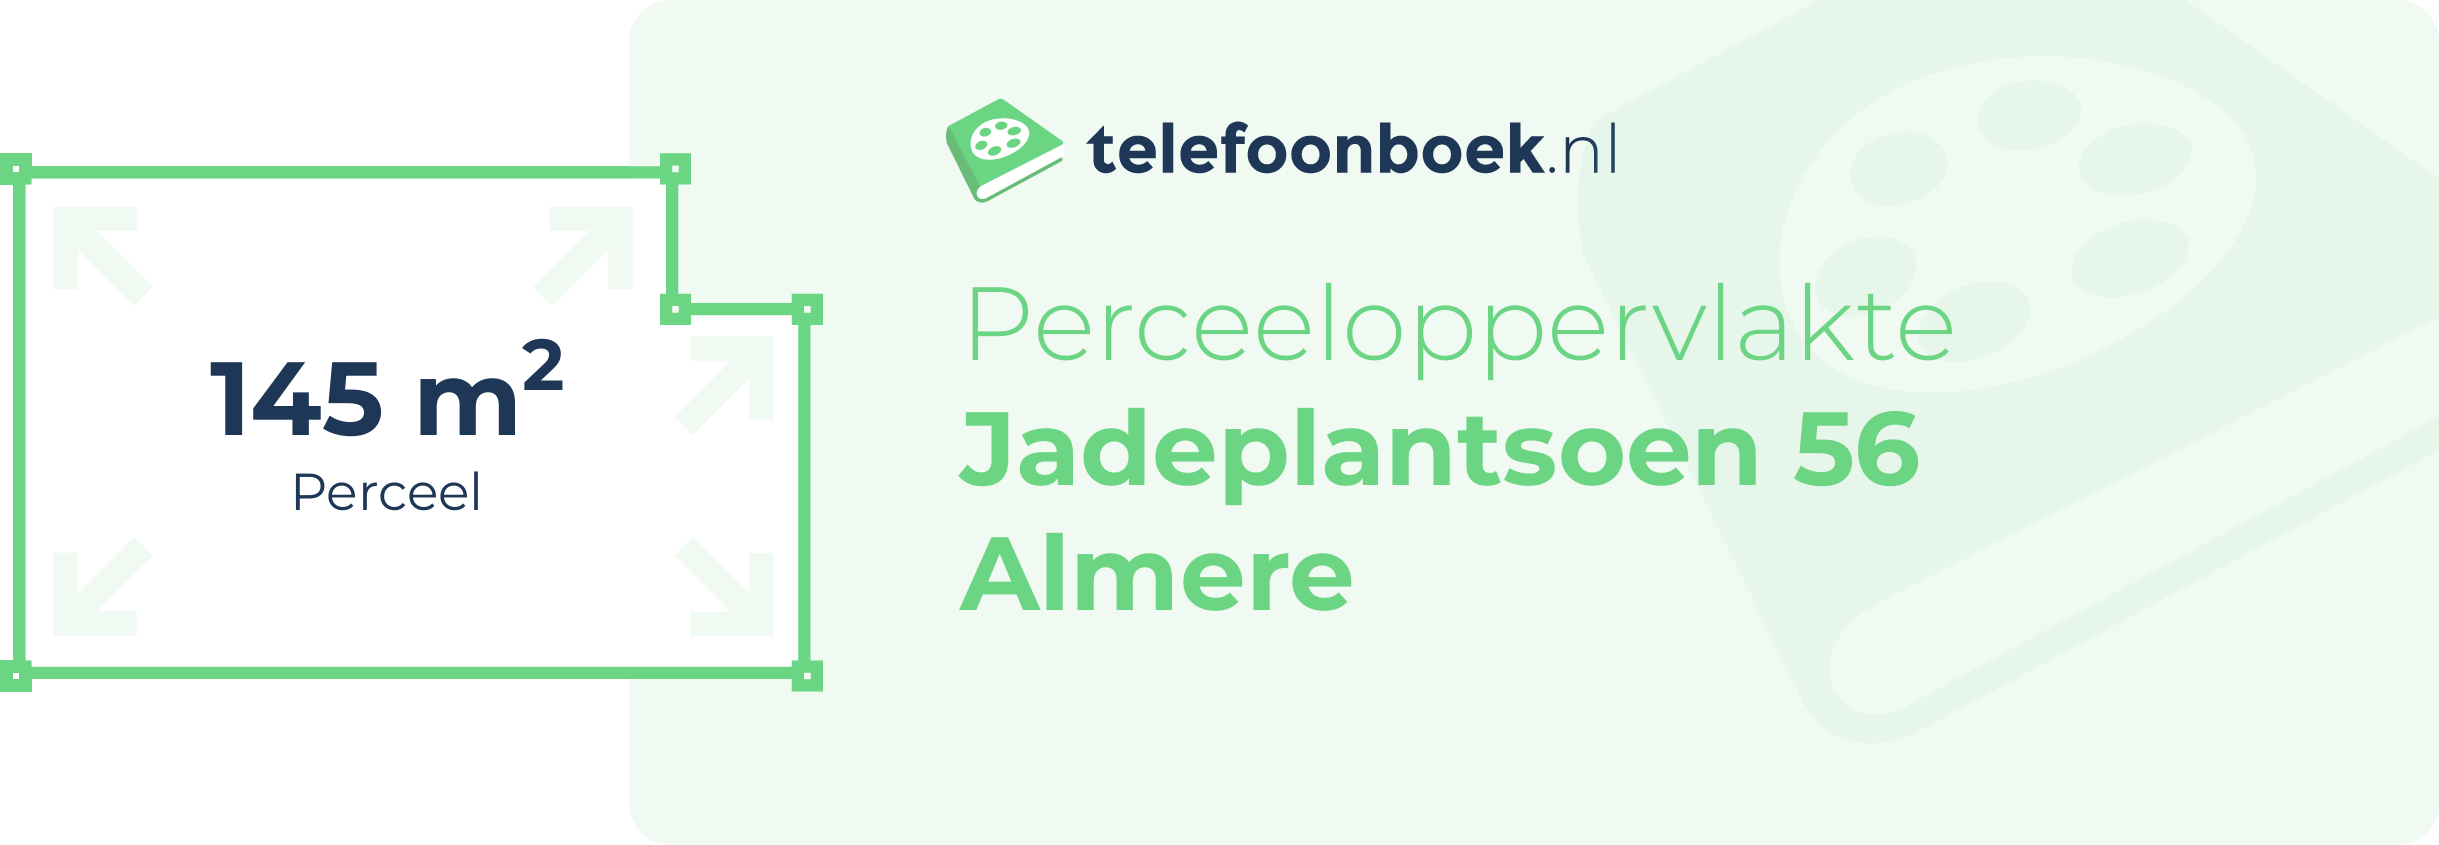 Perceeloppervlakte Jadeplantsoen 56 Almere